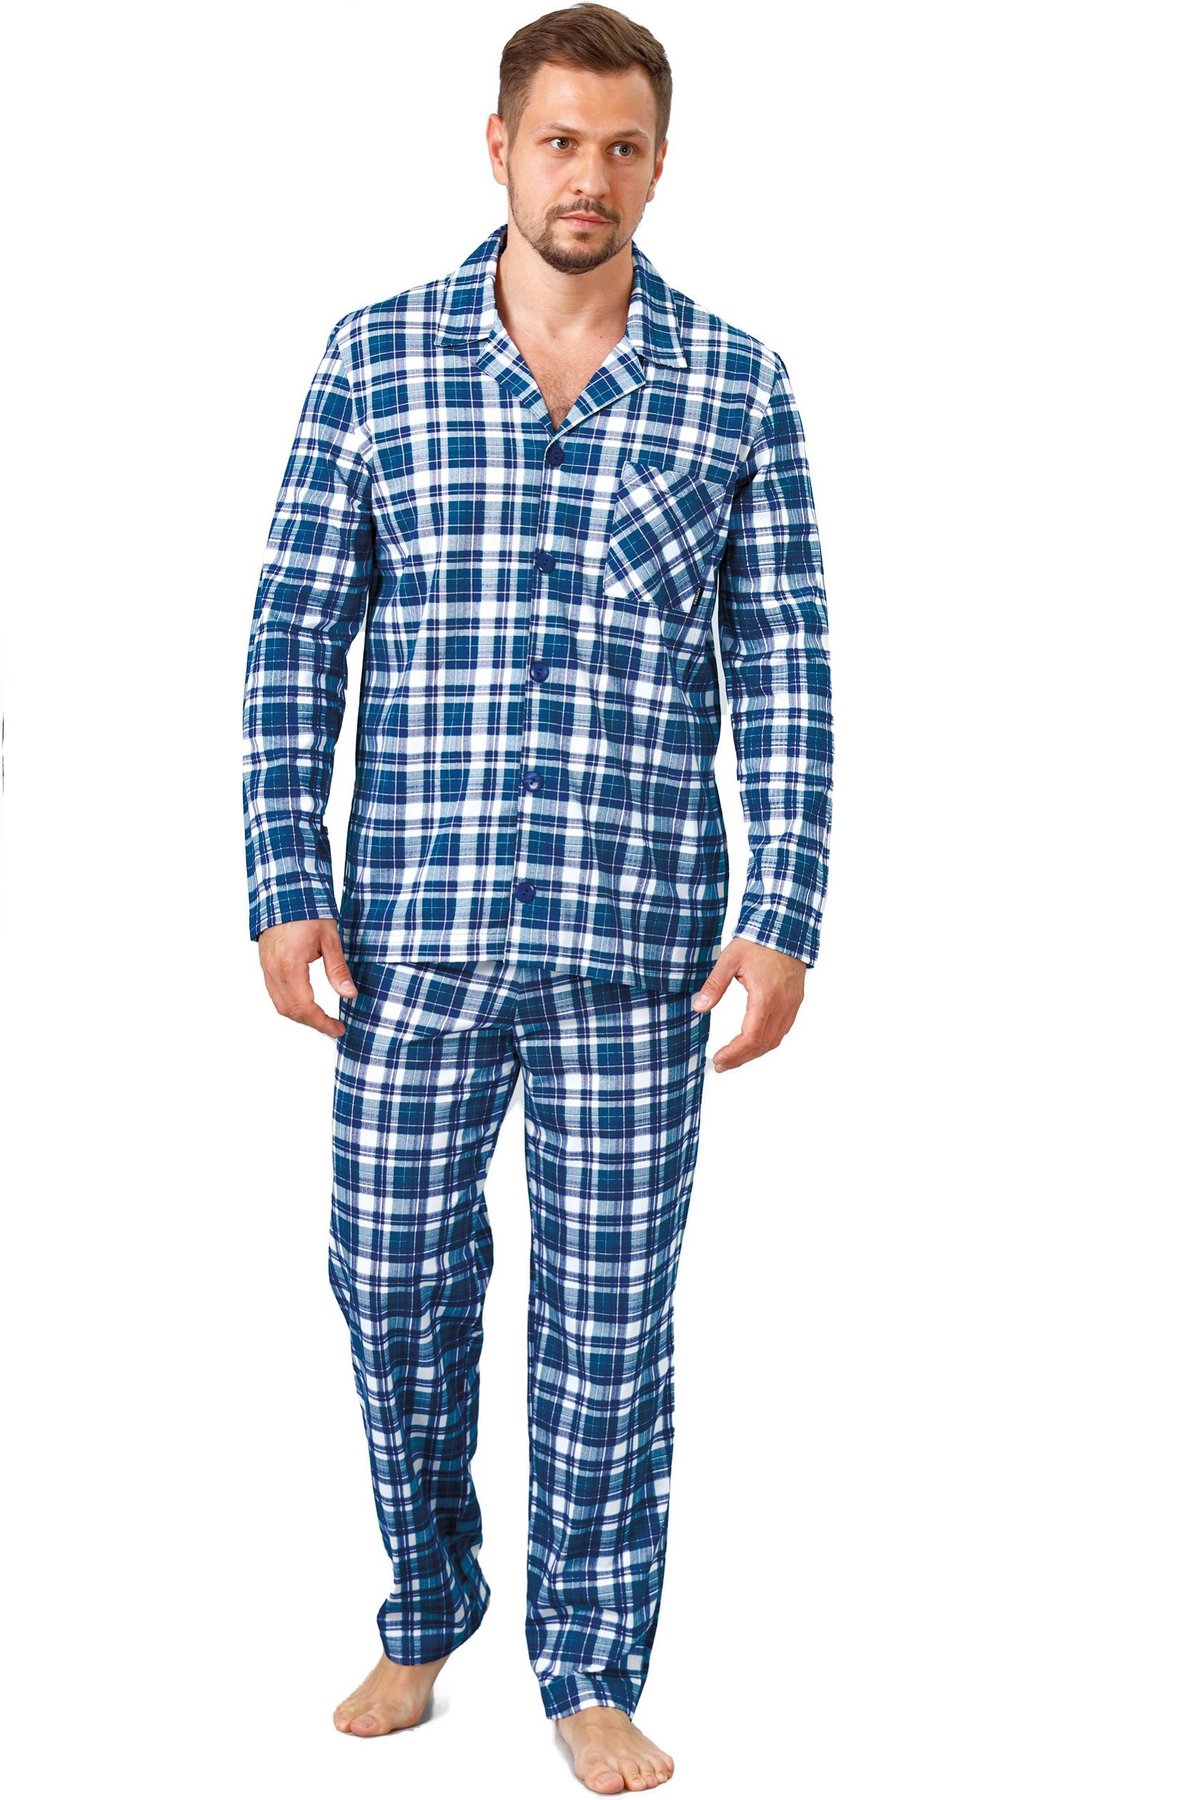 Пижама теплая Hotberg Evan 1124, M, синій